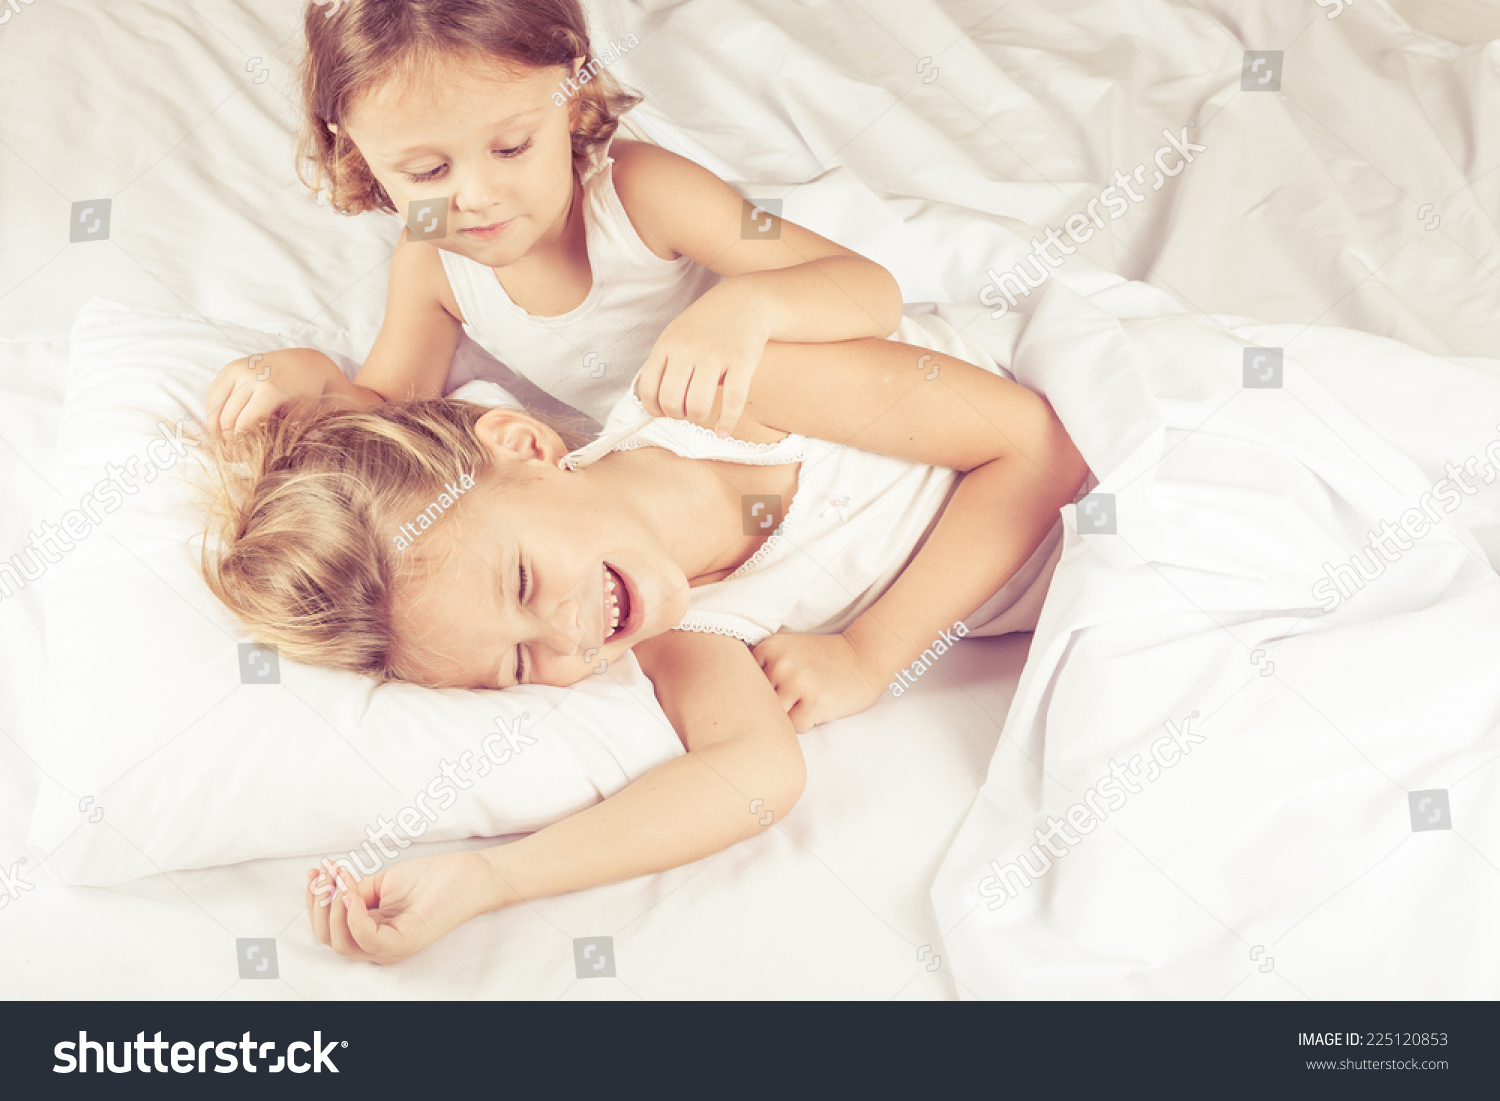 Сестра пришла к брату в постель. Братик и сестричка в кровати. Сестрички в постели. С сестренкой в постели. Кровать для сестренок.